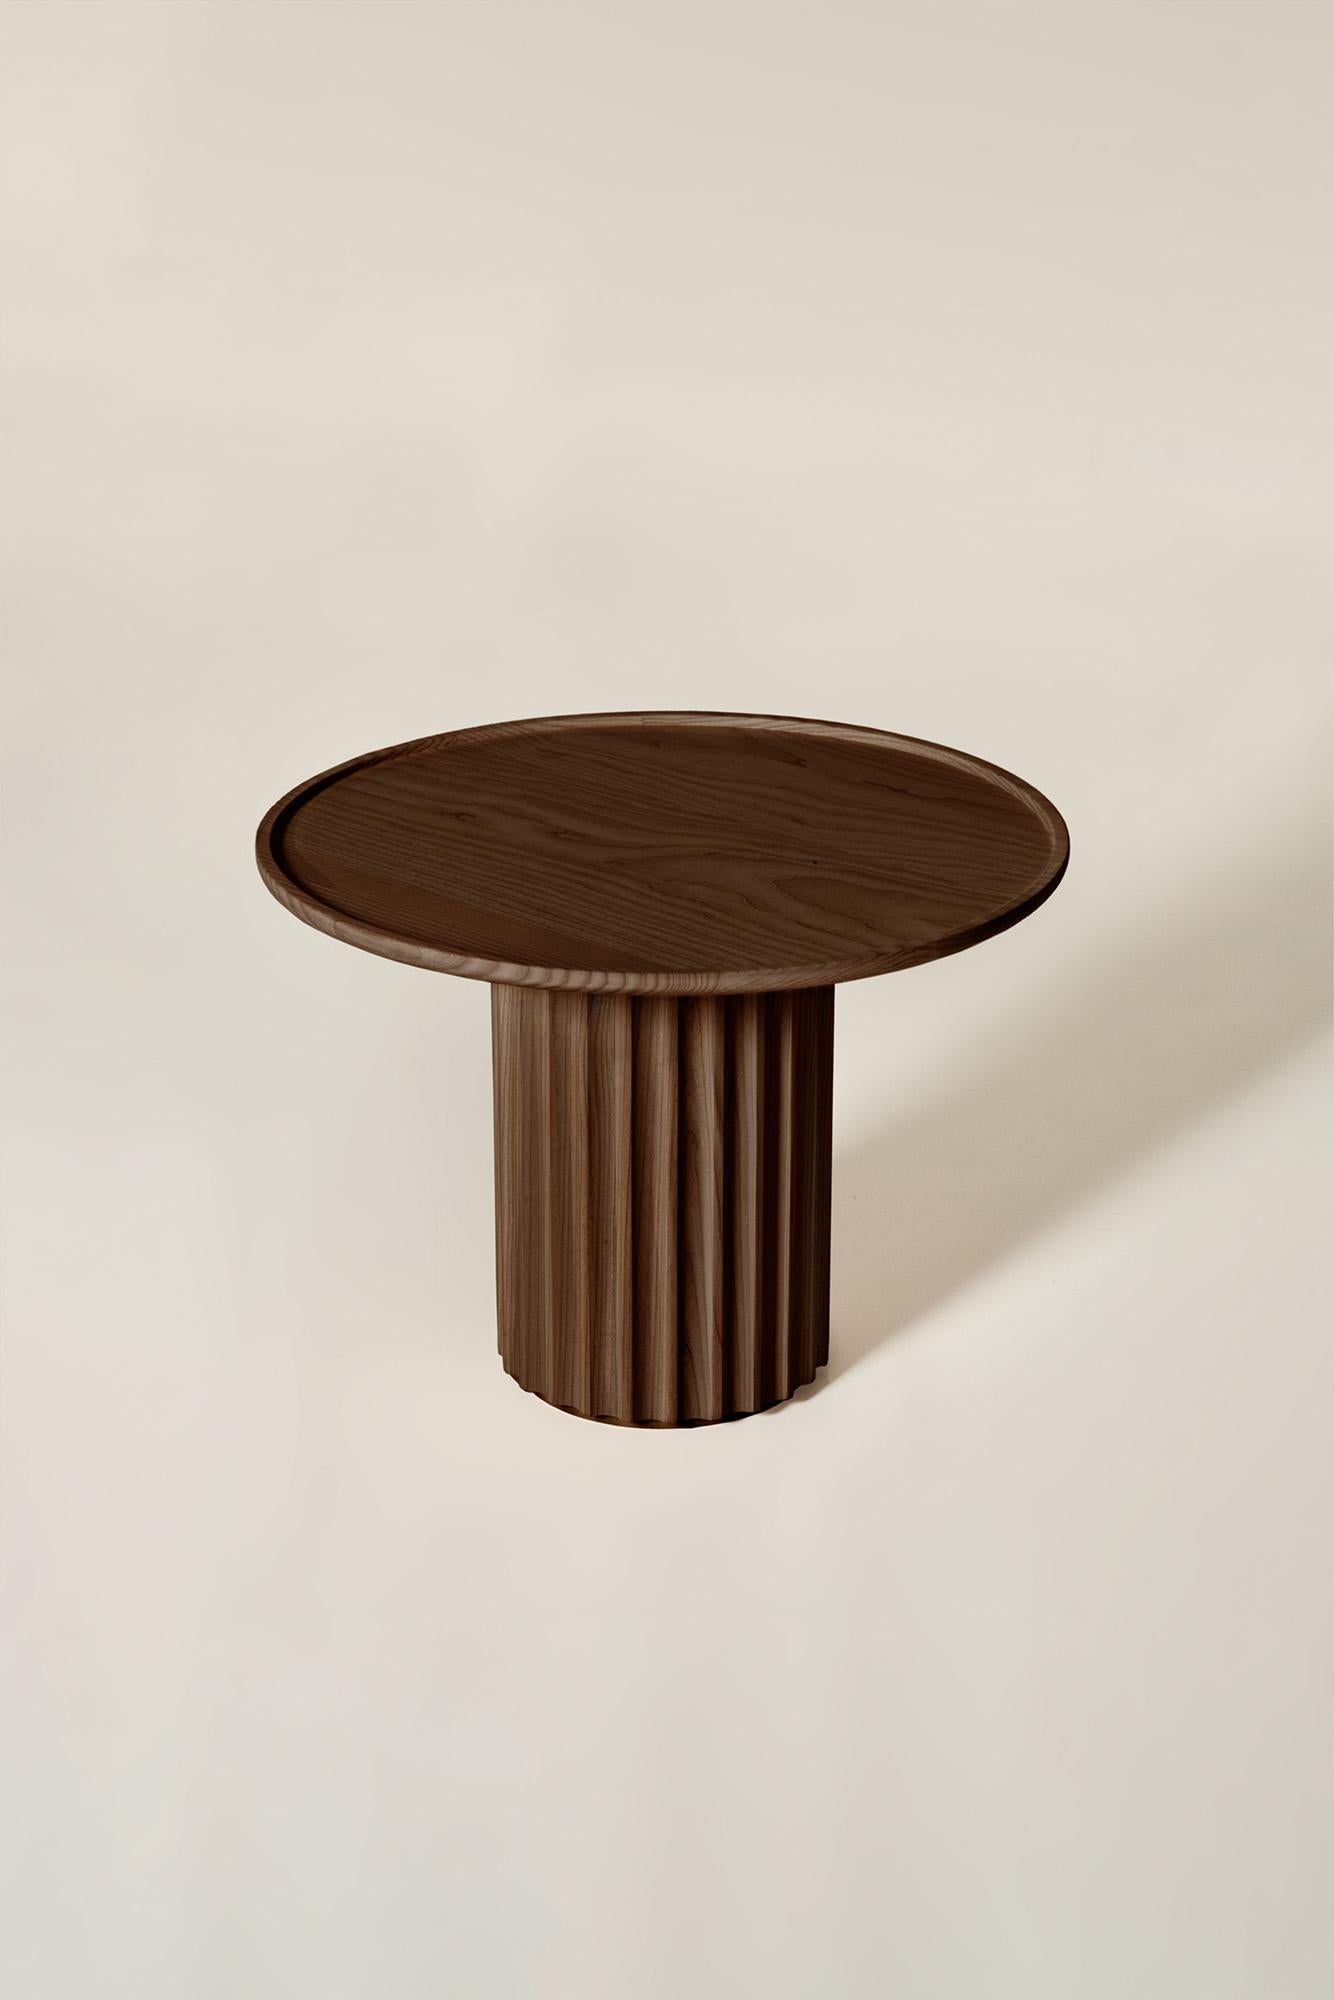 Frêne Table basse Capitello en bois massif, finition en frêne brun, contemporaine en vente